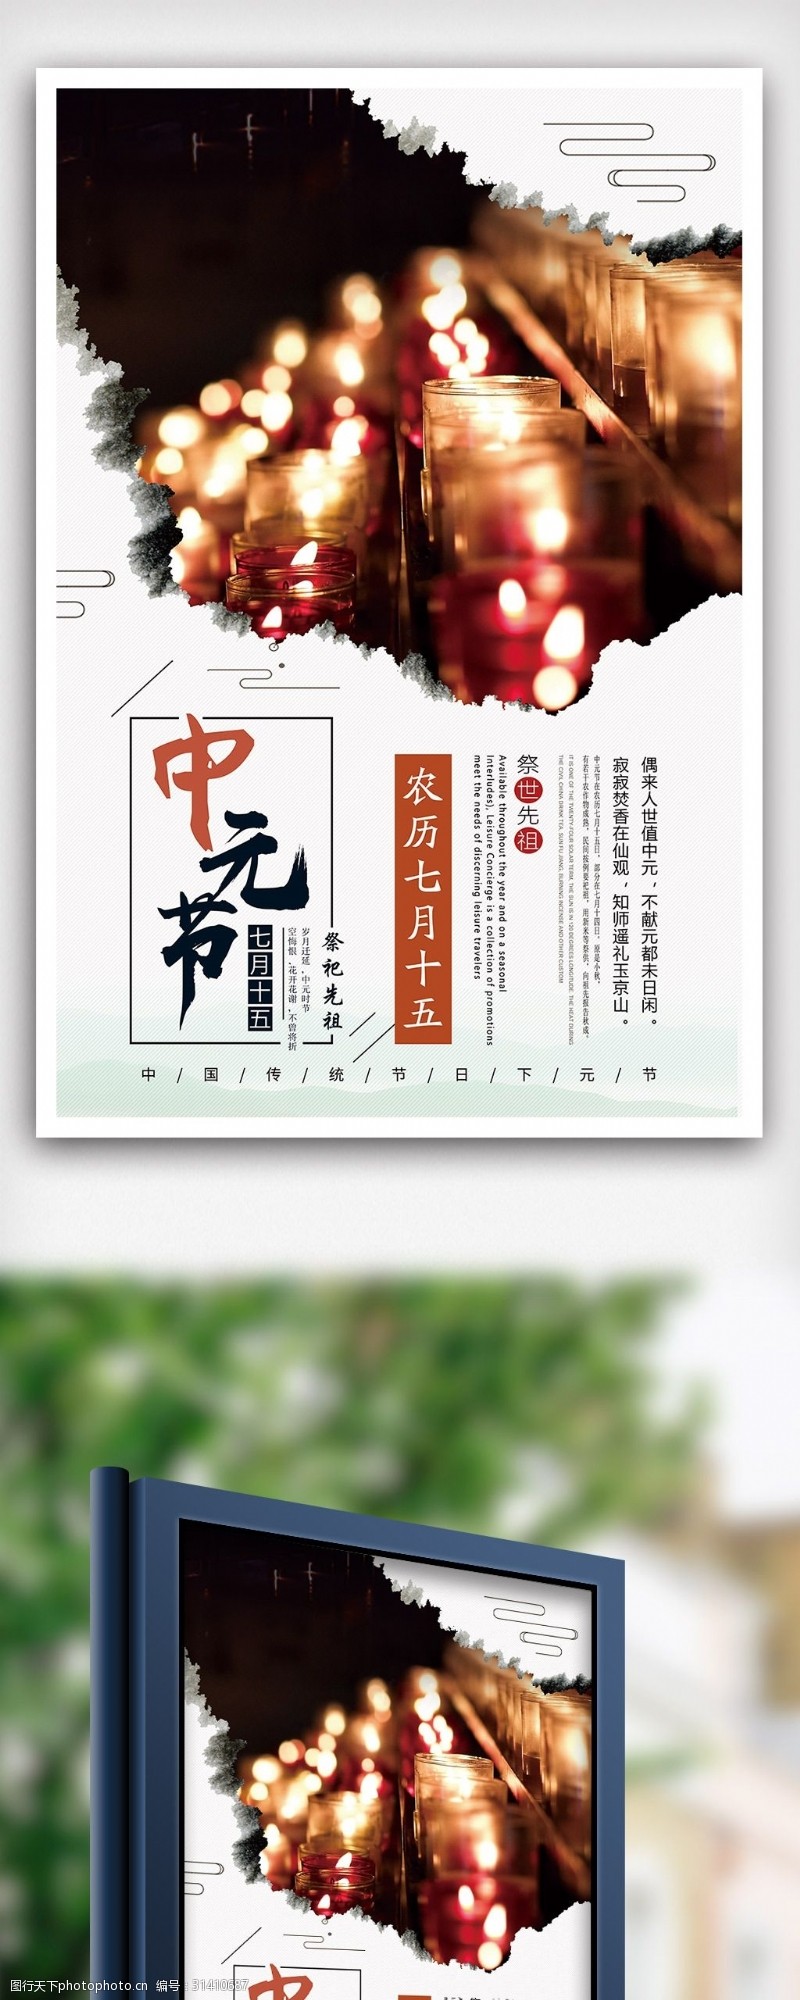 七月十五2018年白色中国风简洁中元节鬼节海报